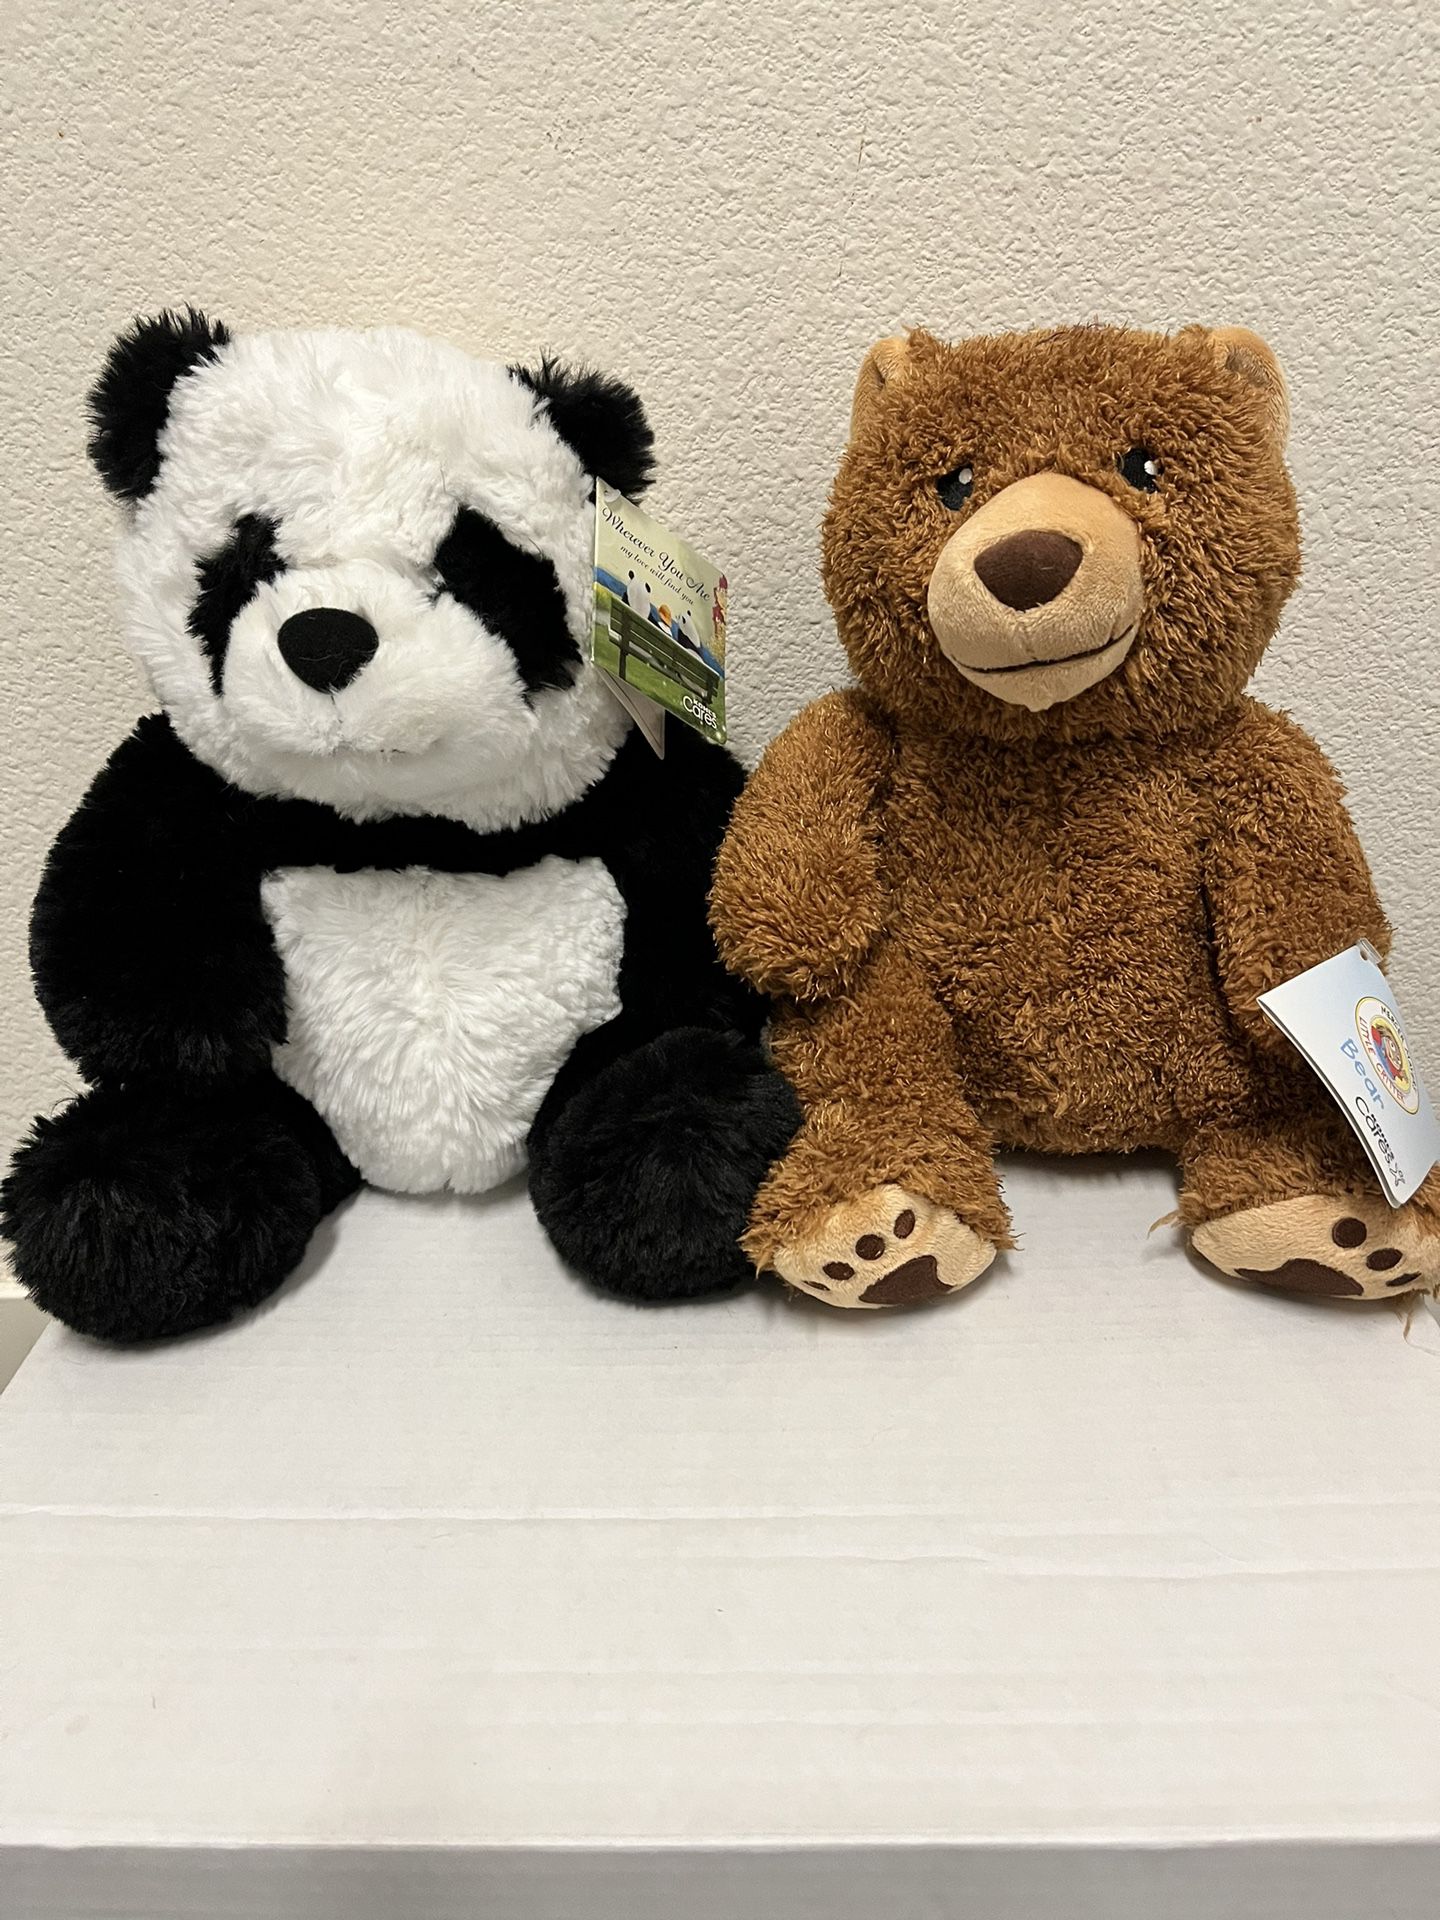 (2) - Plush Bears - (New)  Brown - Bear - 10-1/2”  - $ 5 Panda - 11” - $ 5